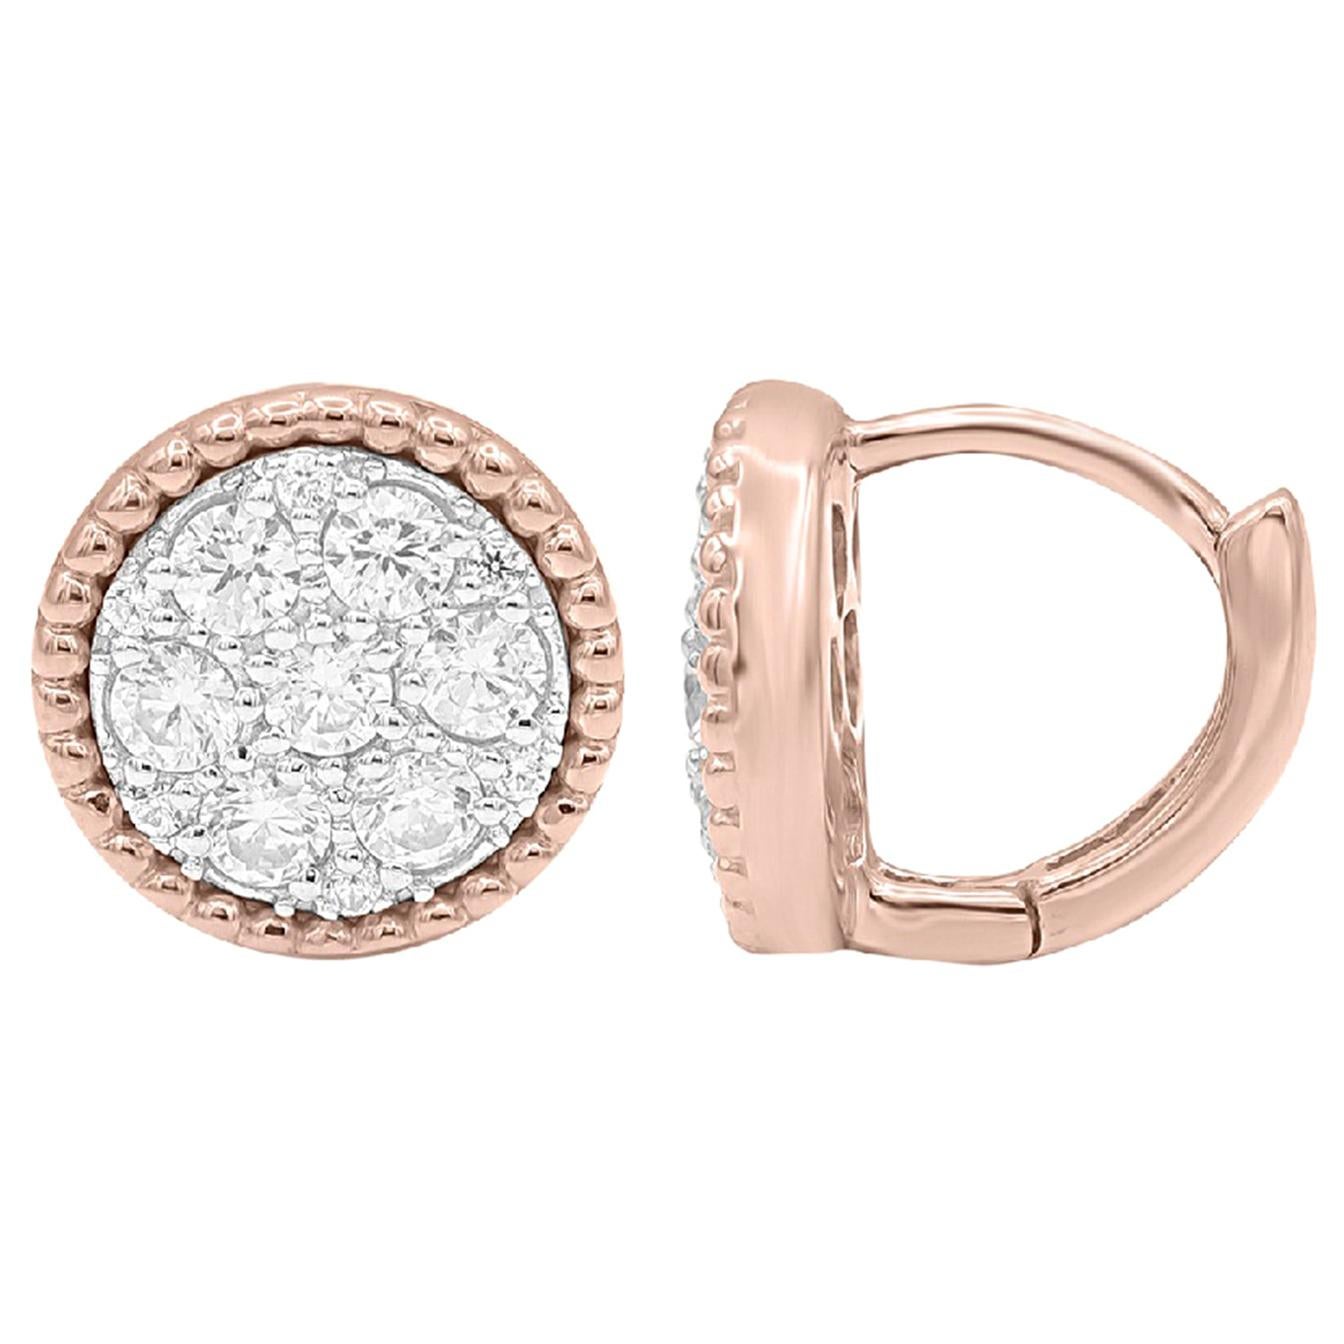 TJD 0.50 Carat Round Diamond 14 Karat Rose Gold Circle Cluster Fashion Earrings